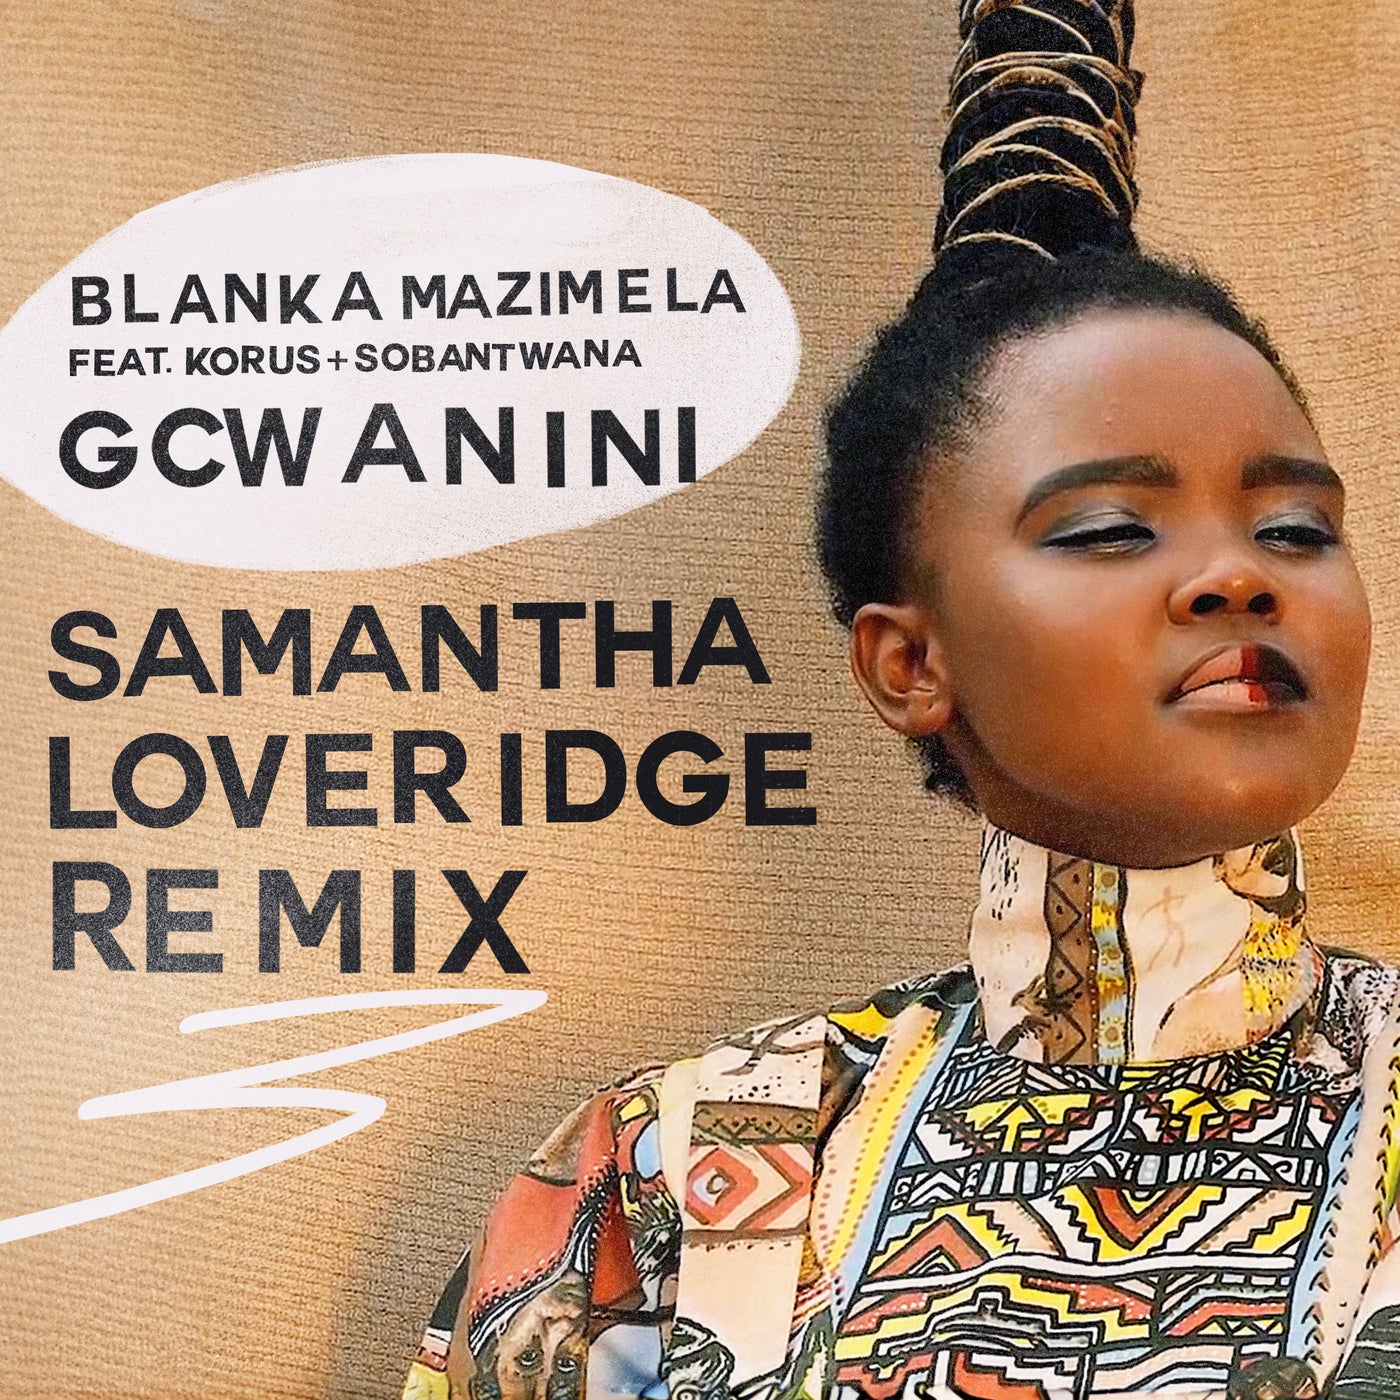 Gcwanini (Samantha Loveridge Remix)